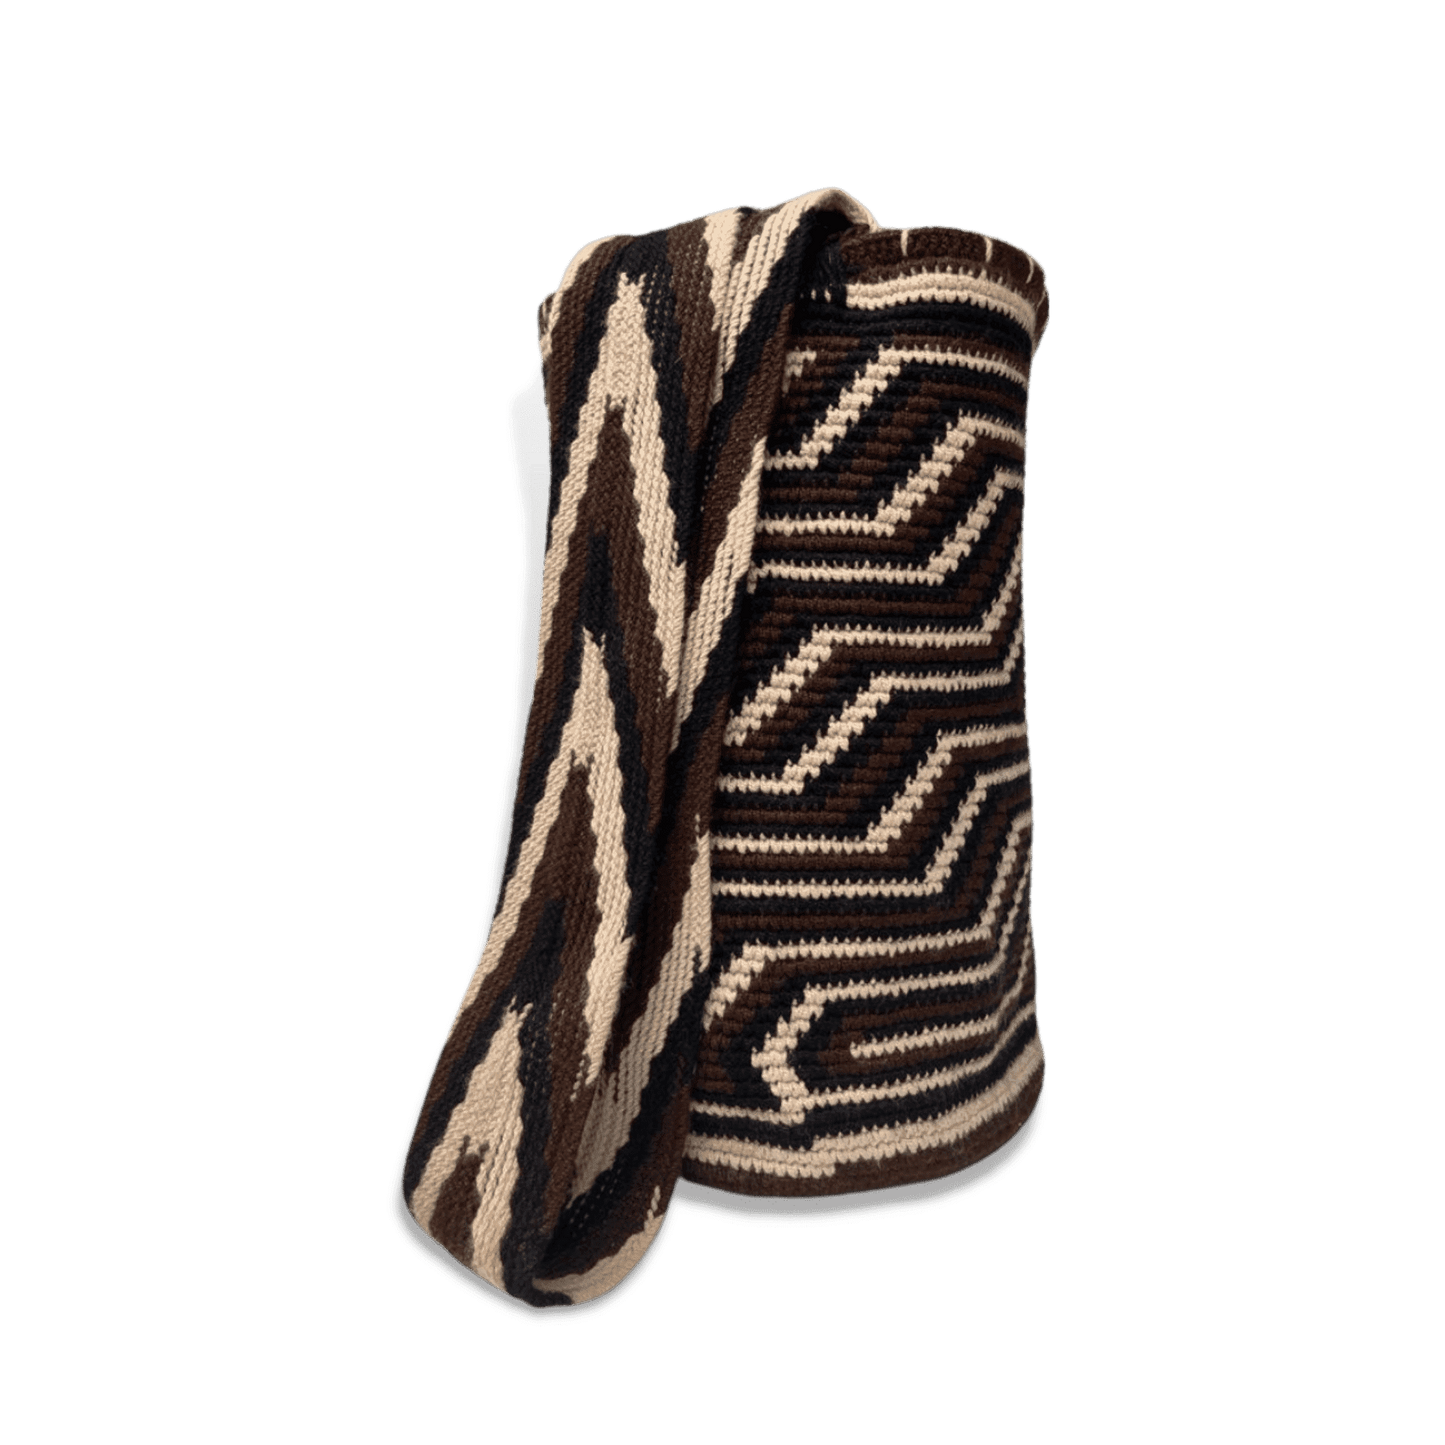 Mochila Wayuu original para hombre con diseño pensamiento en colores café, negro y beige